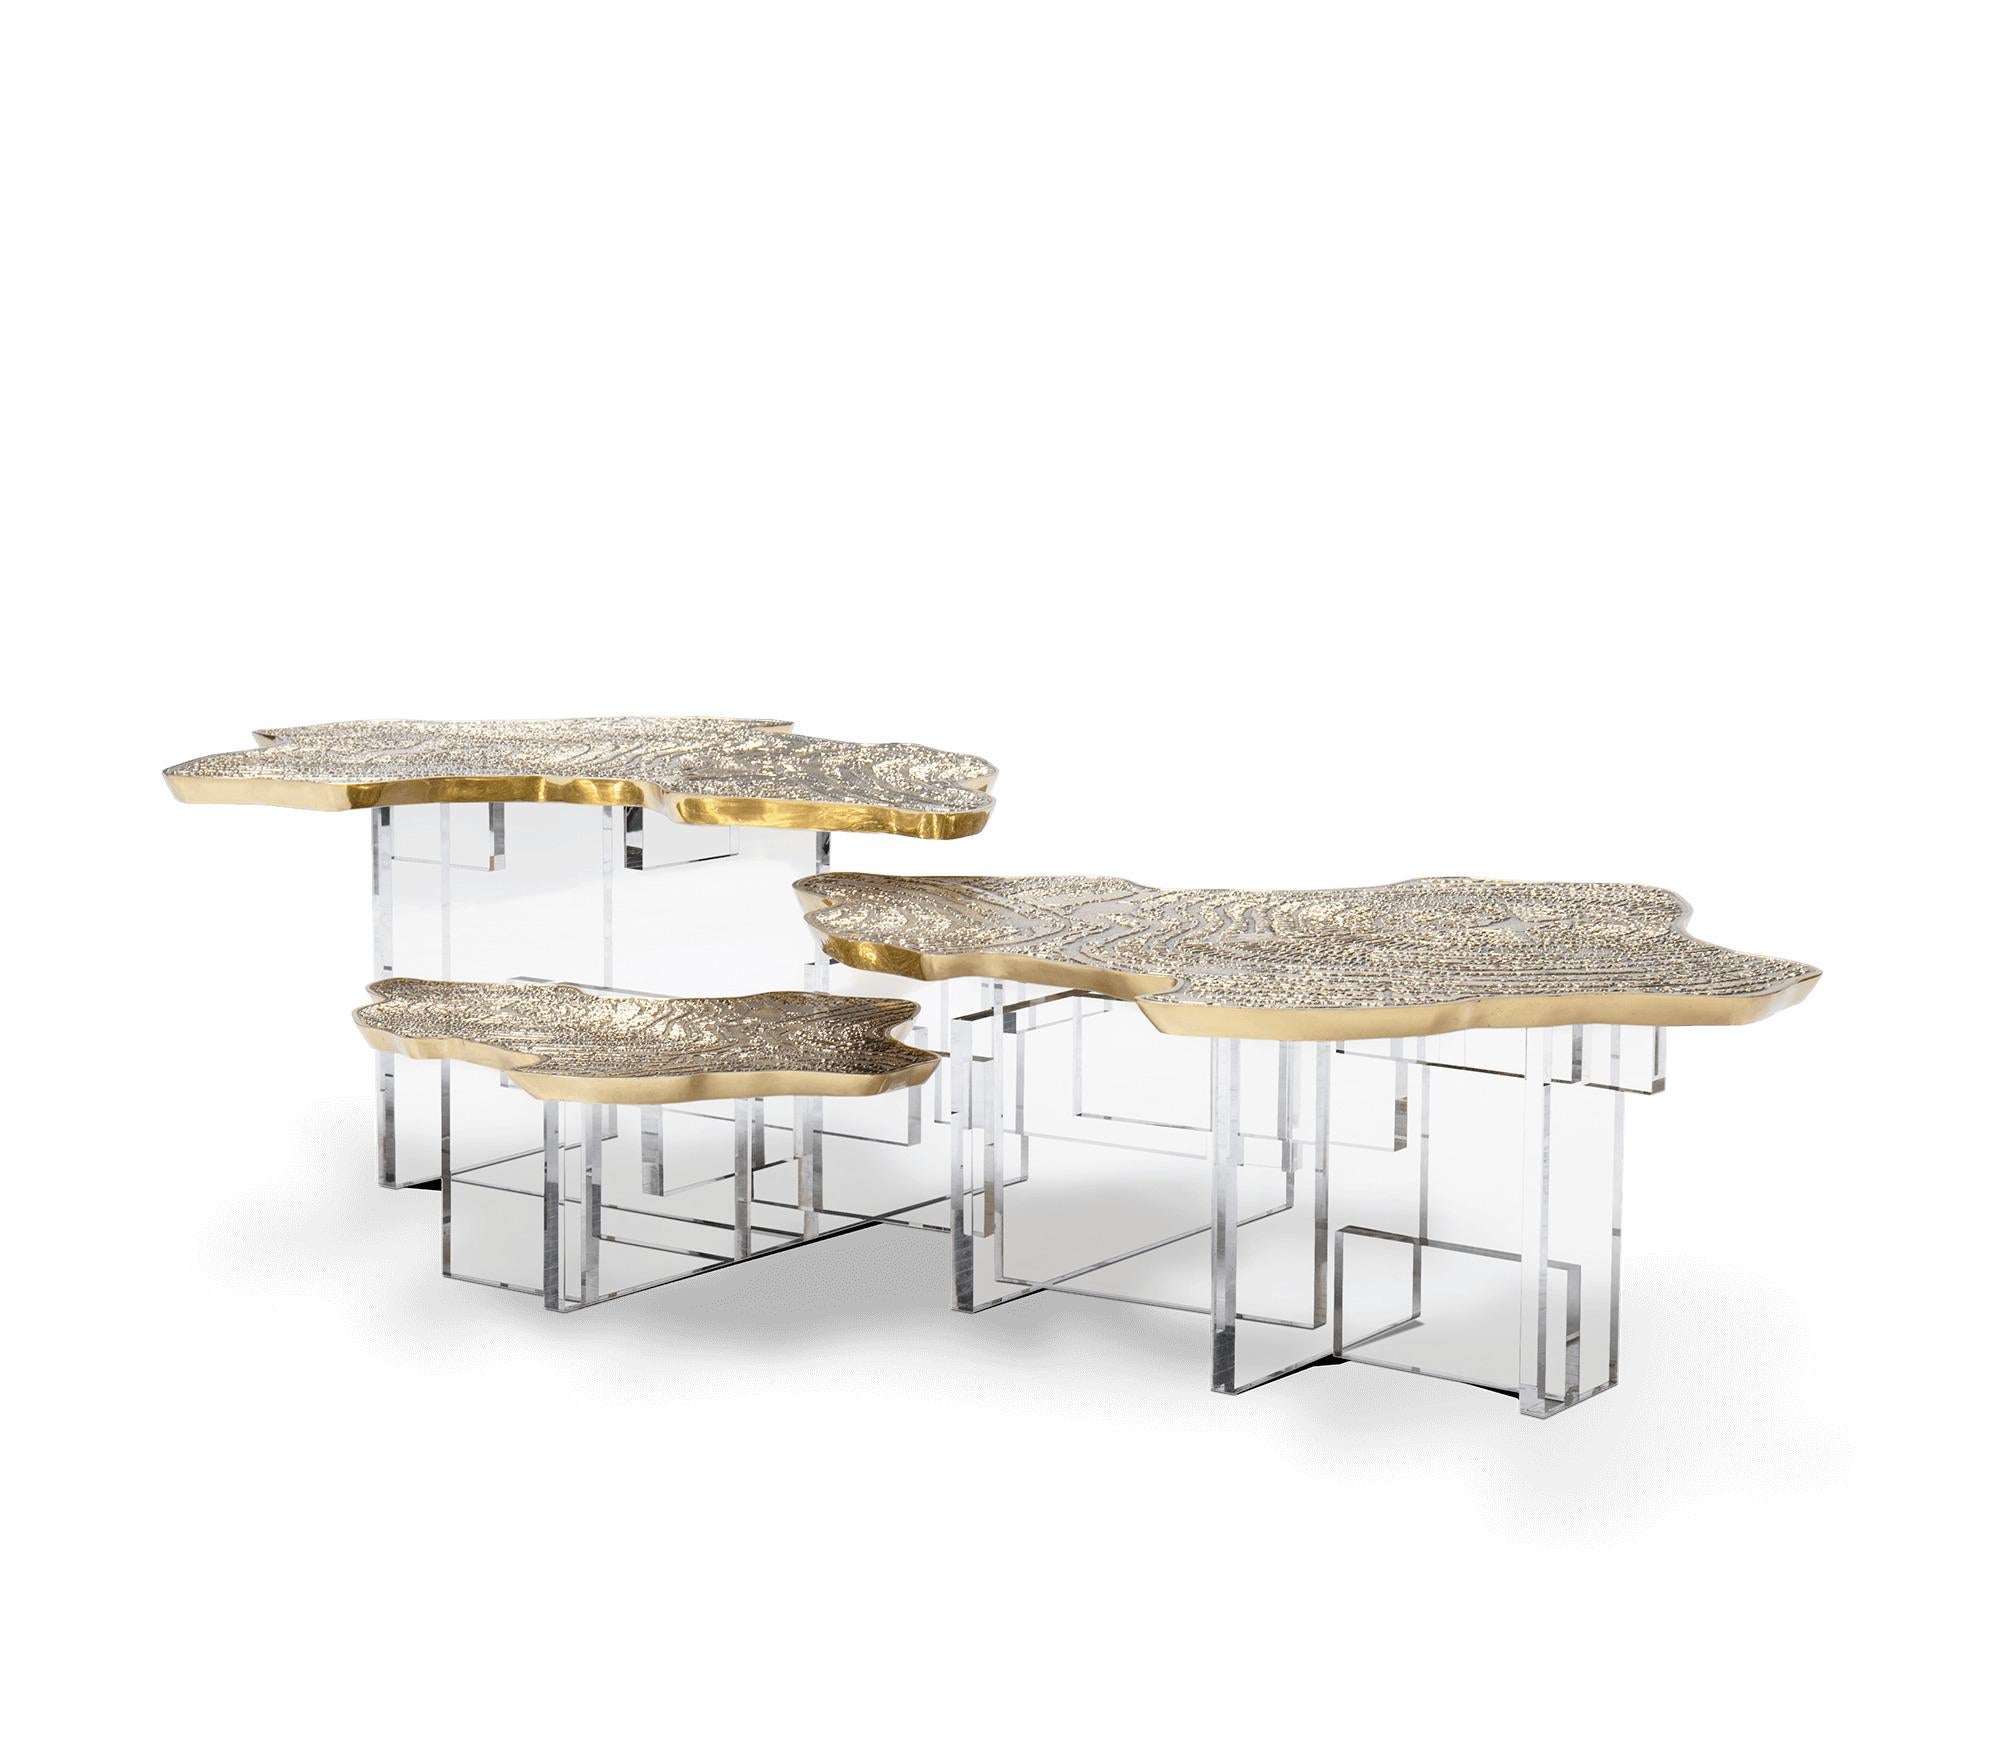 Table basse en laiton avec base en acrylique

Table basse élégante avec surface dorée en laiton moulé avec une finition texturée unique. Présentant à la fois des formes et des matériaux contrastés, la table basse contemporaine est soutenue par une